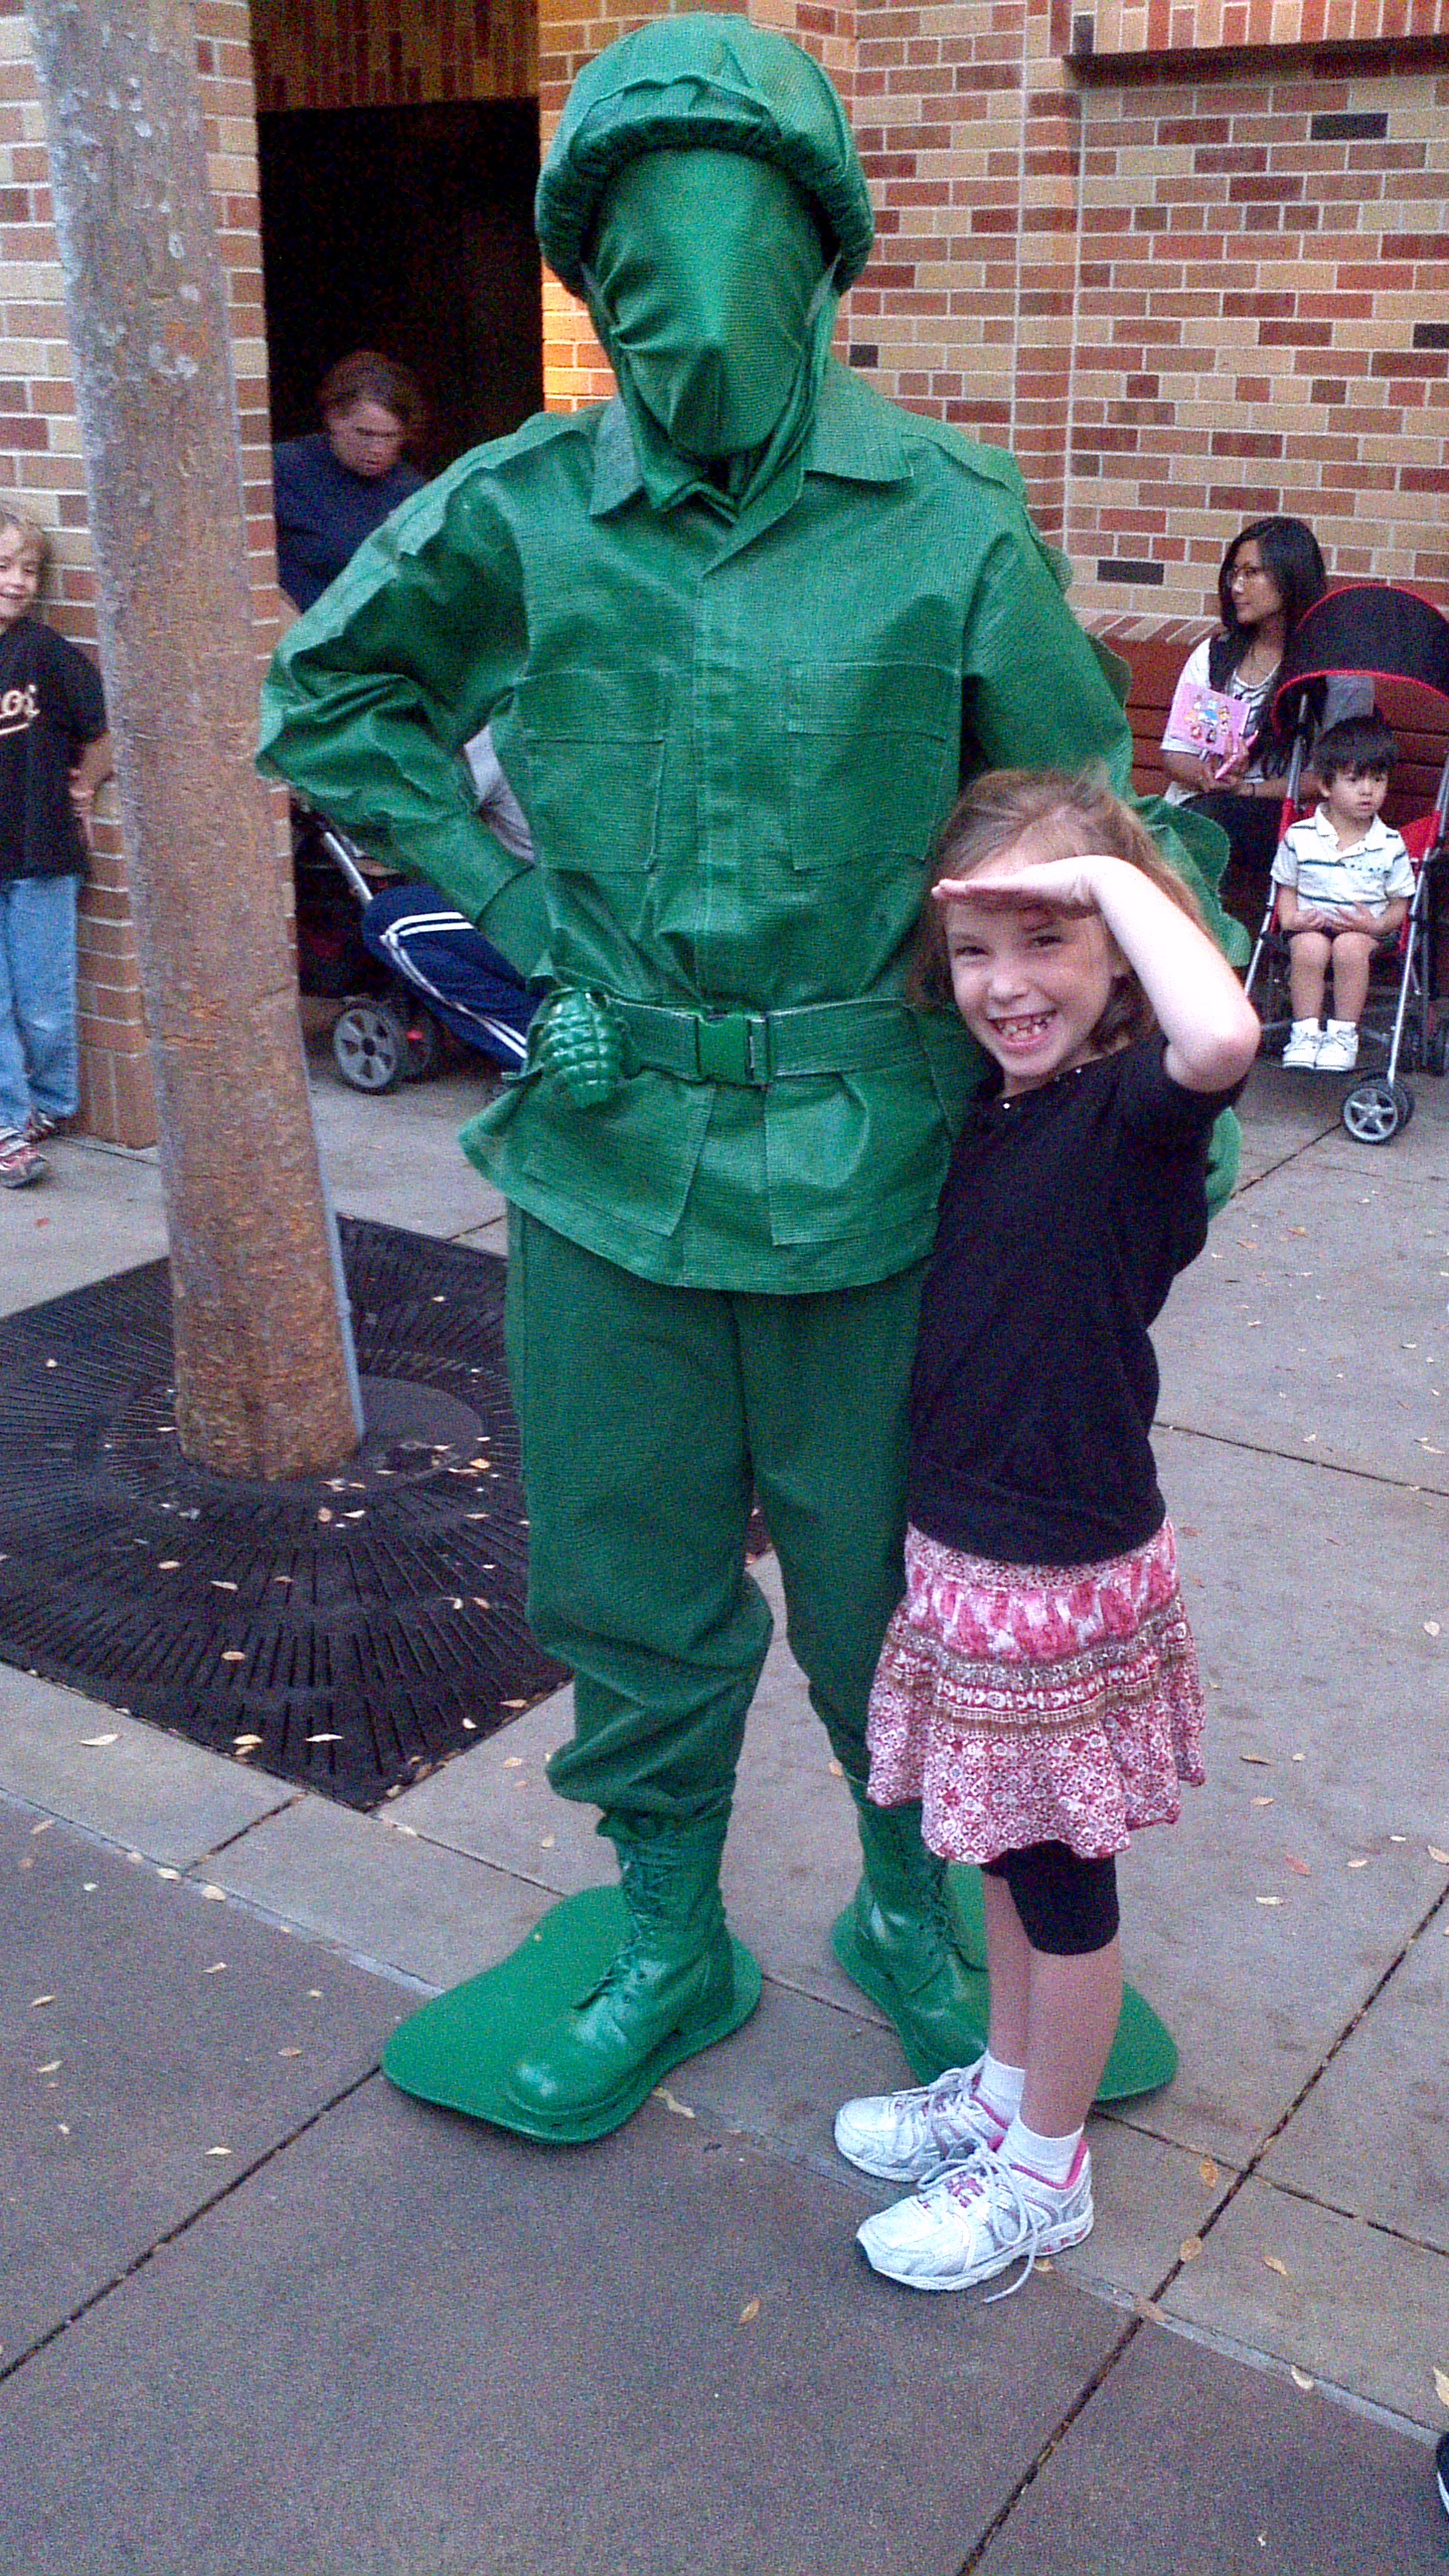 Green Army Man at Hollywood Studios 2011